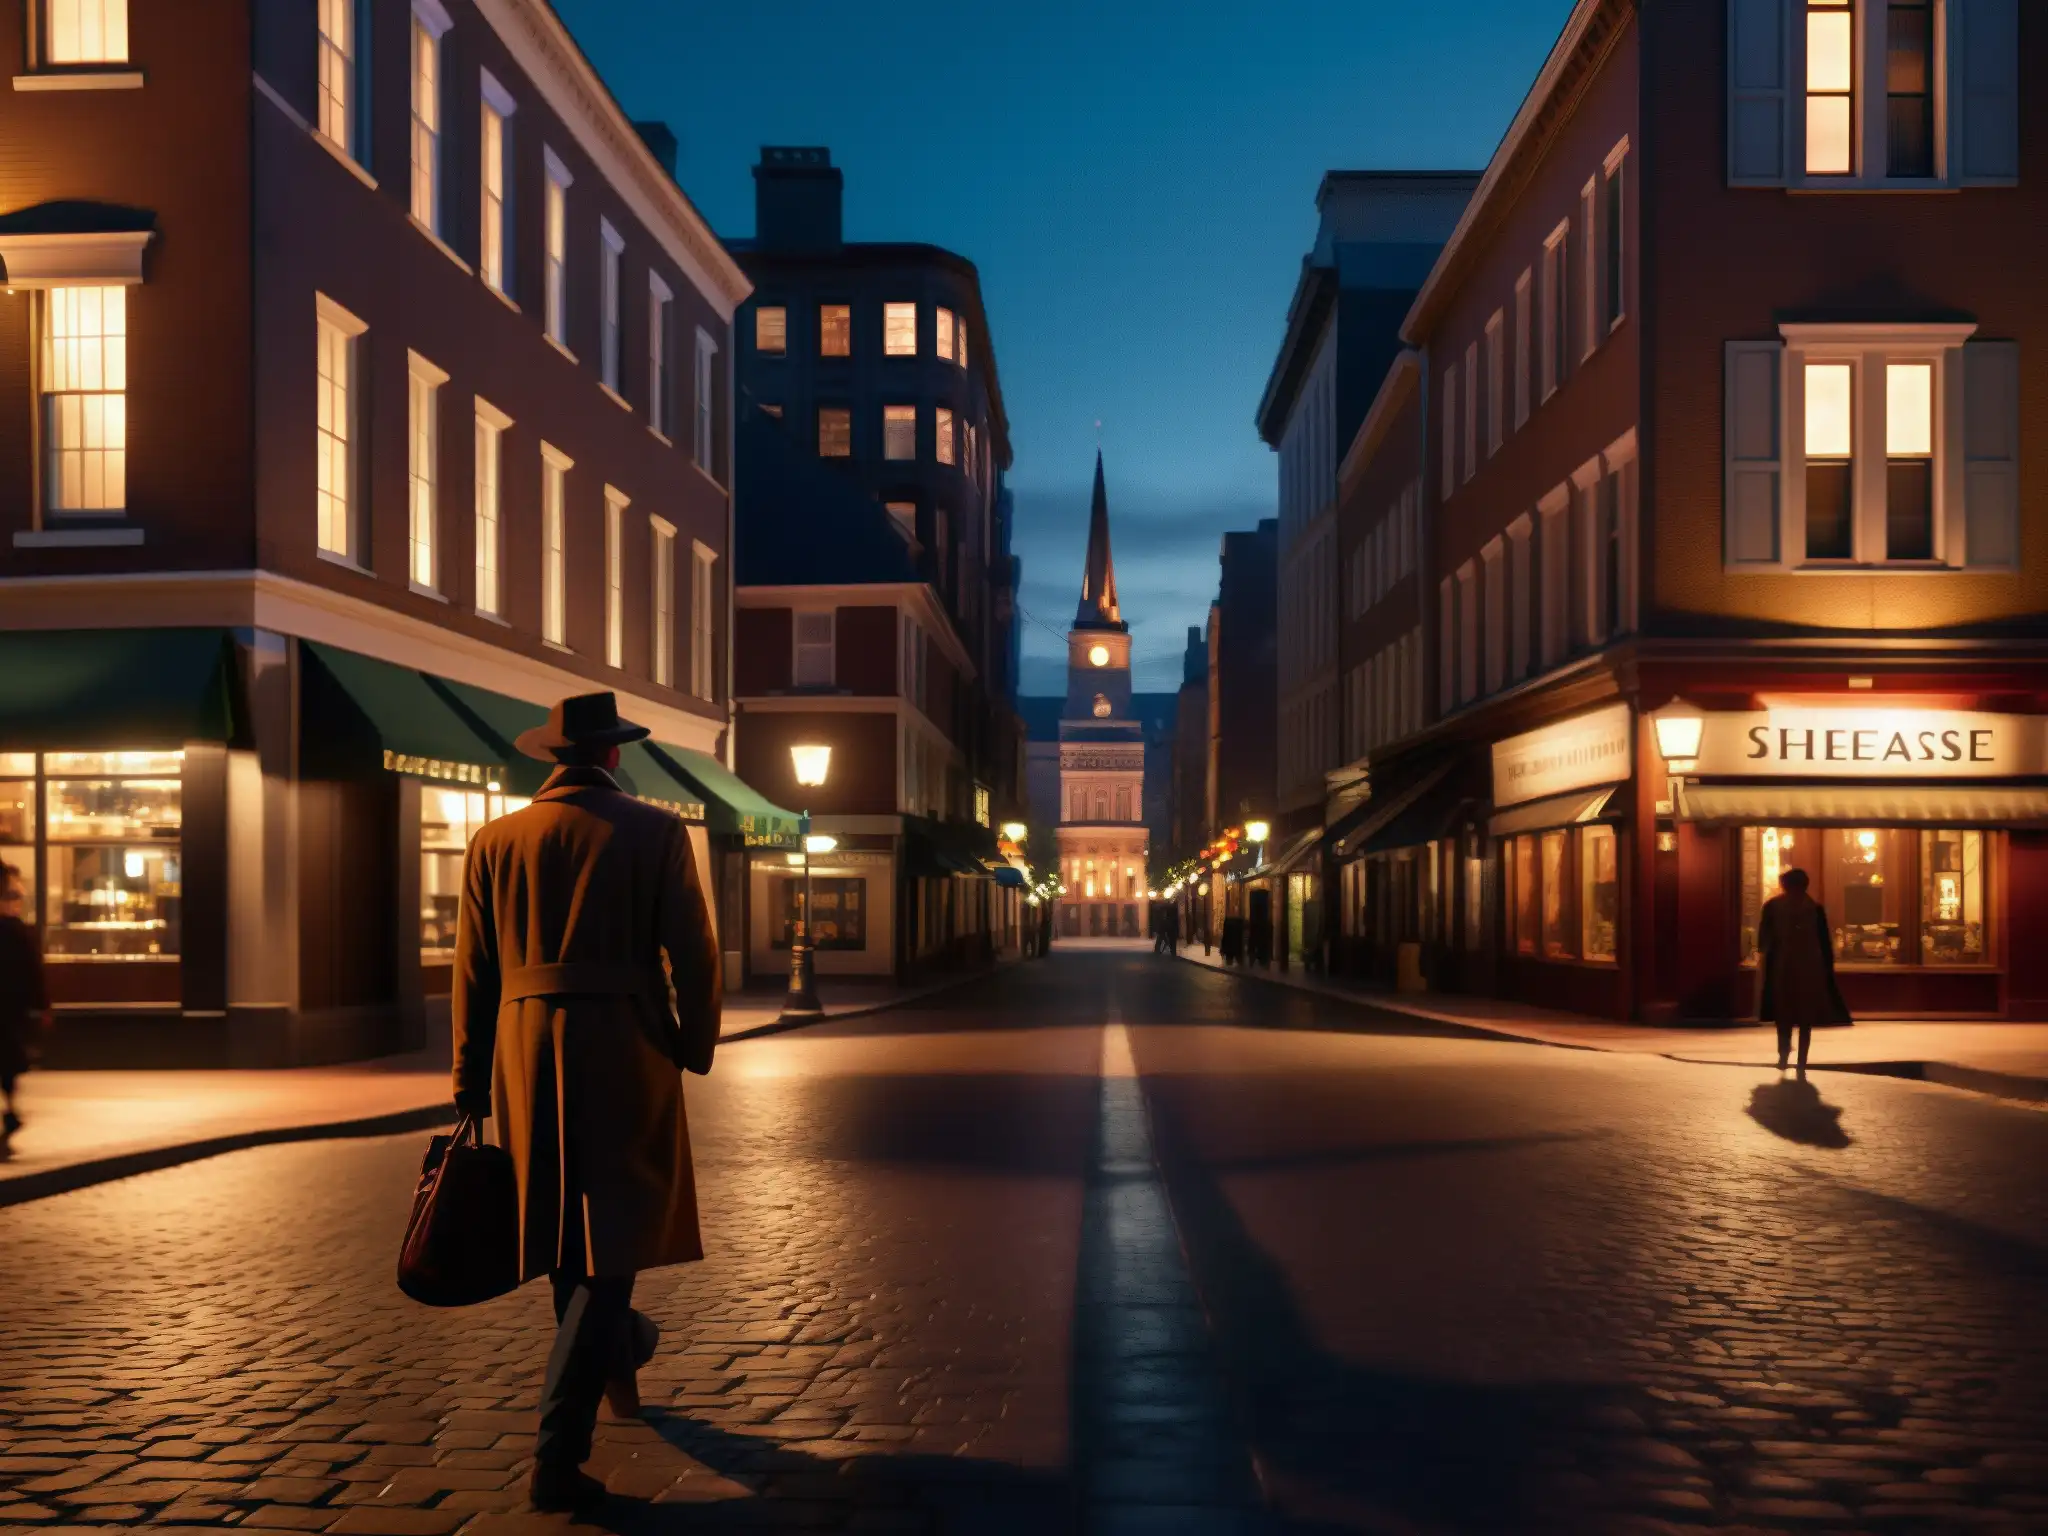 Una calle urbana oscura de noche con figuras misteriosas y una iluminación atmosférica, capturando la esencia de los mitos urbanos